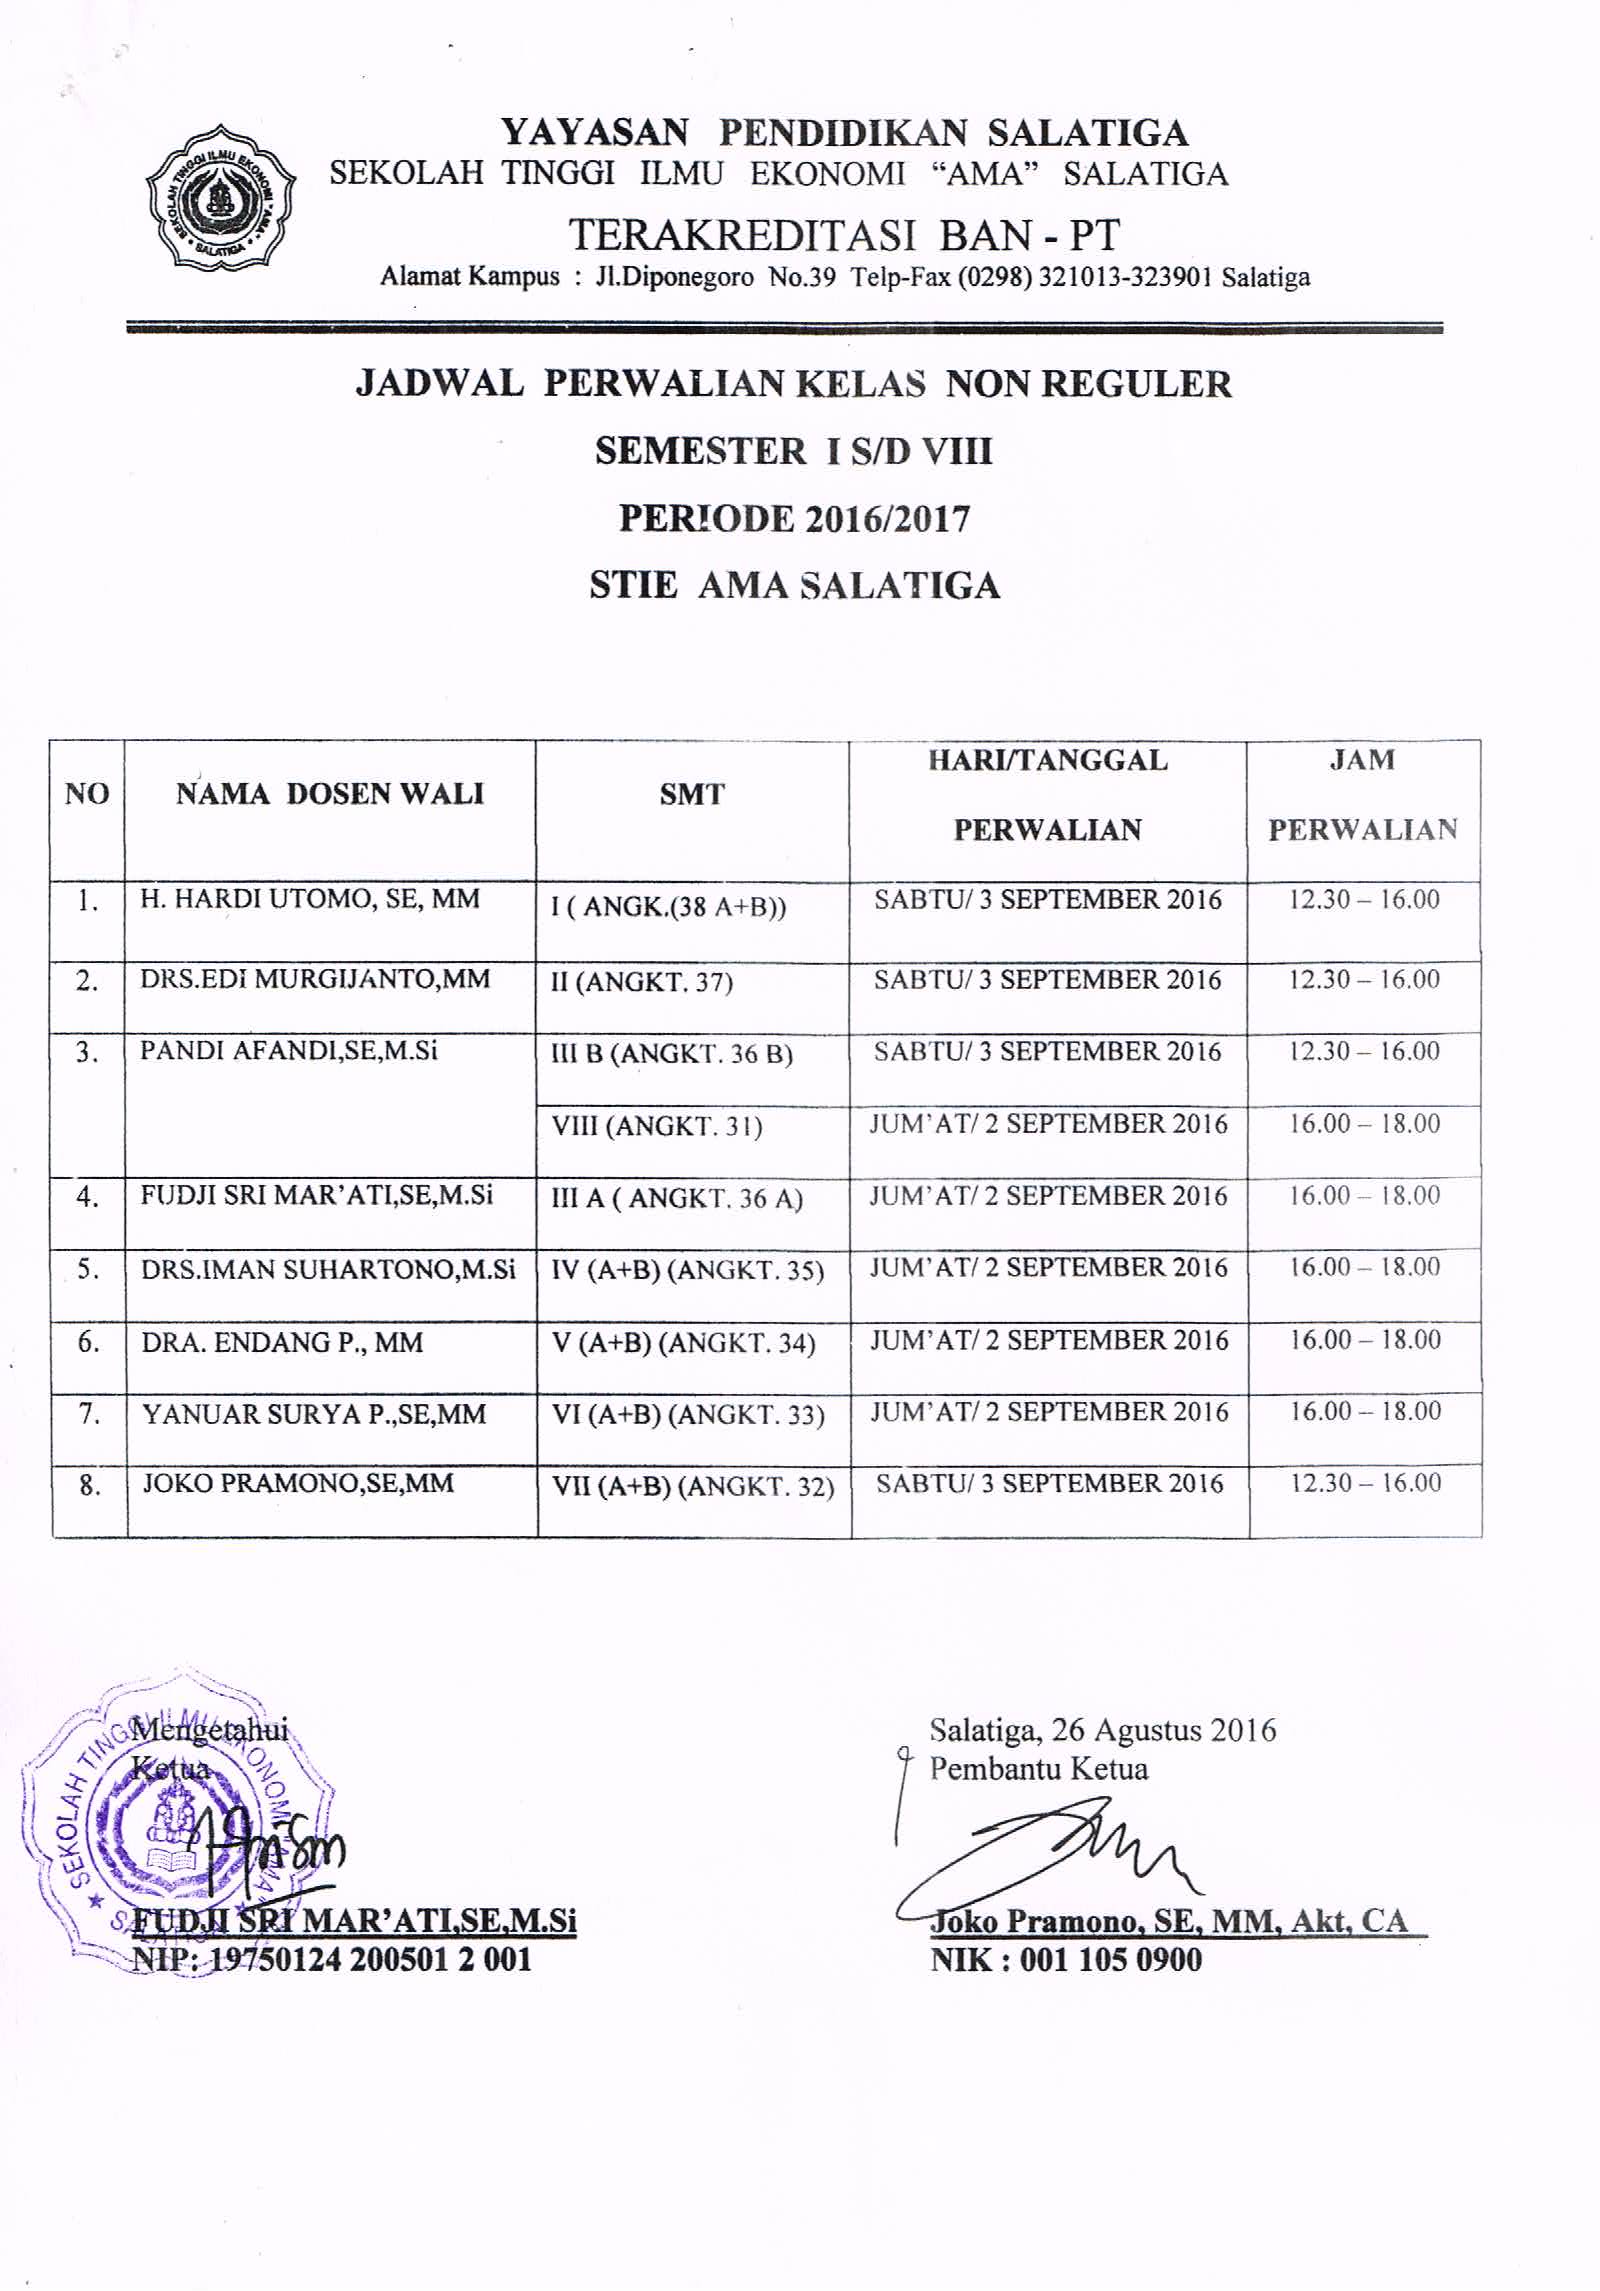 Jadwal Perwalian Mahasiswa kelas NonReguler semester I s/d VIII periode 2016/2017